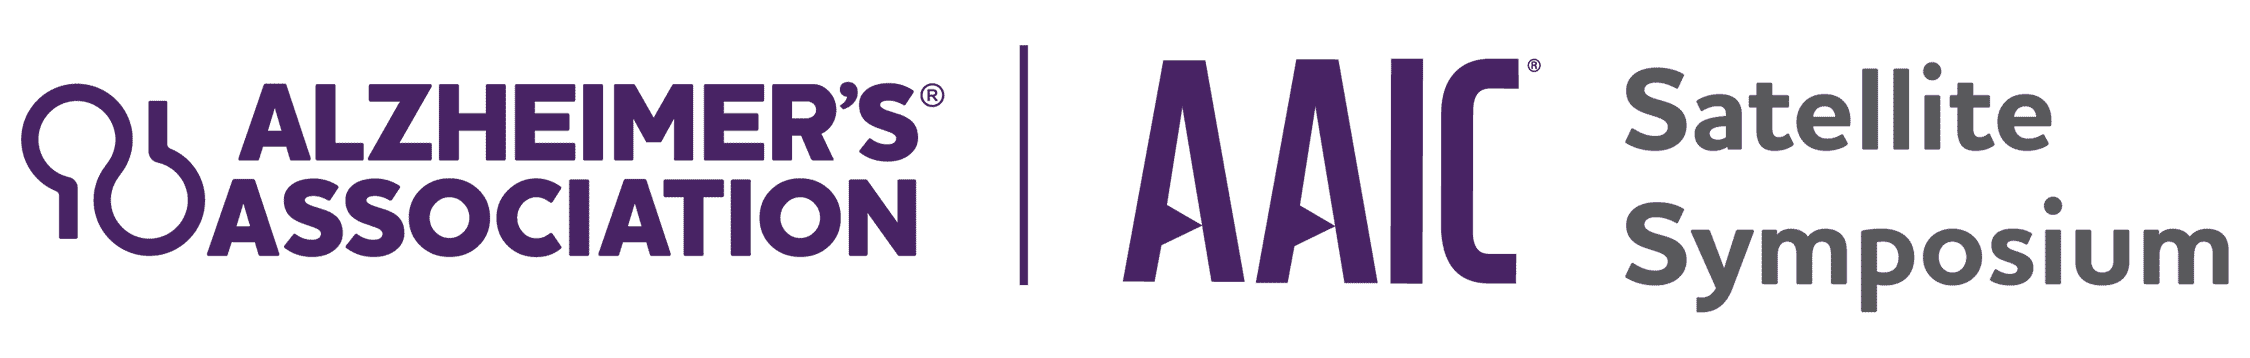 AAIC Satellite Symposium logo